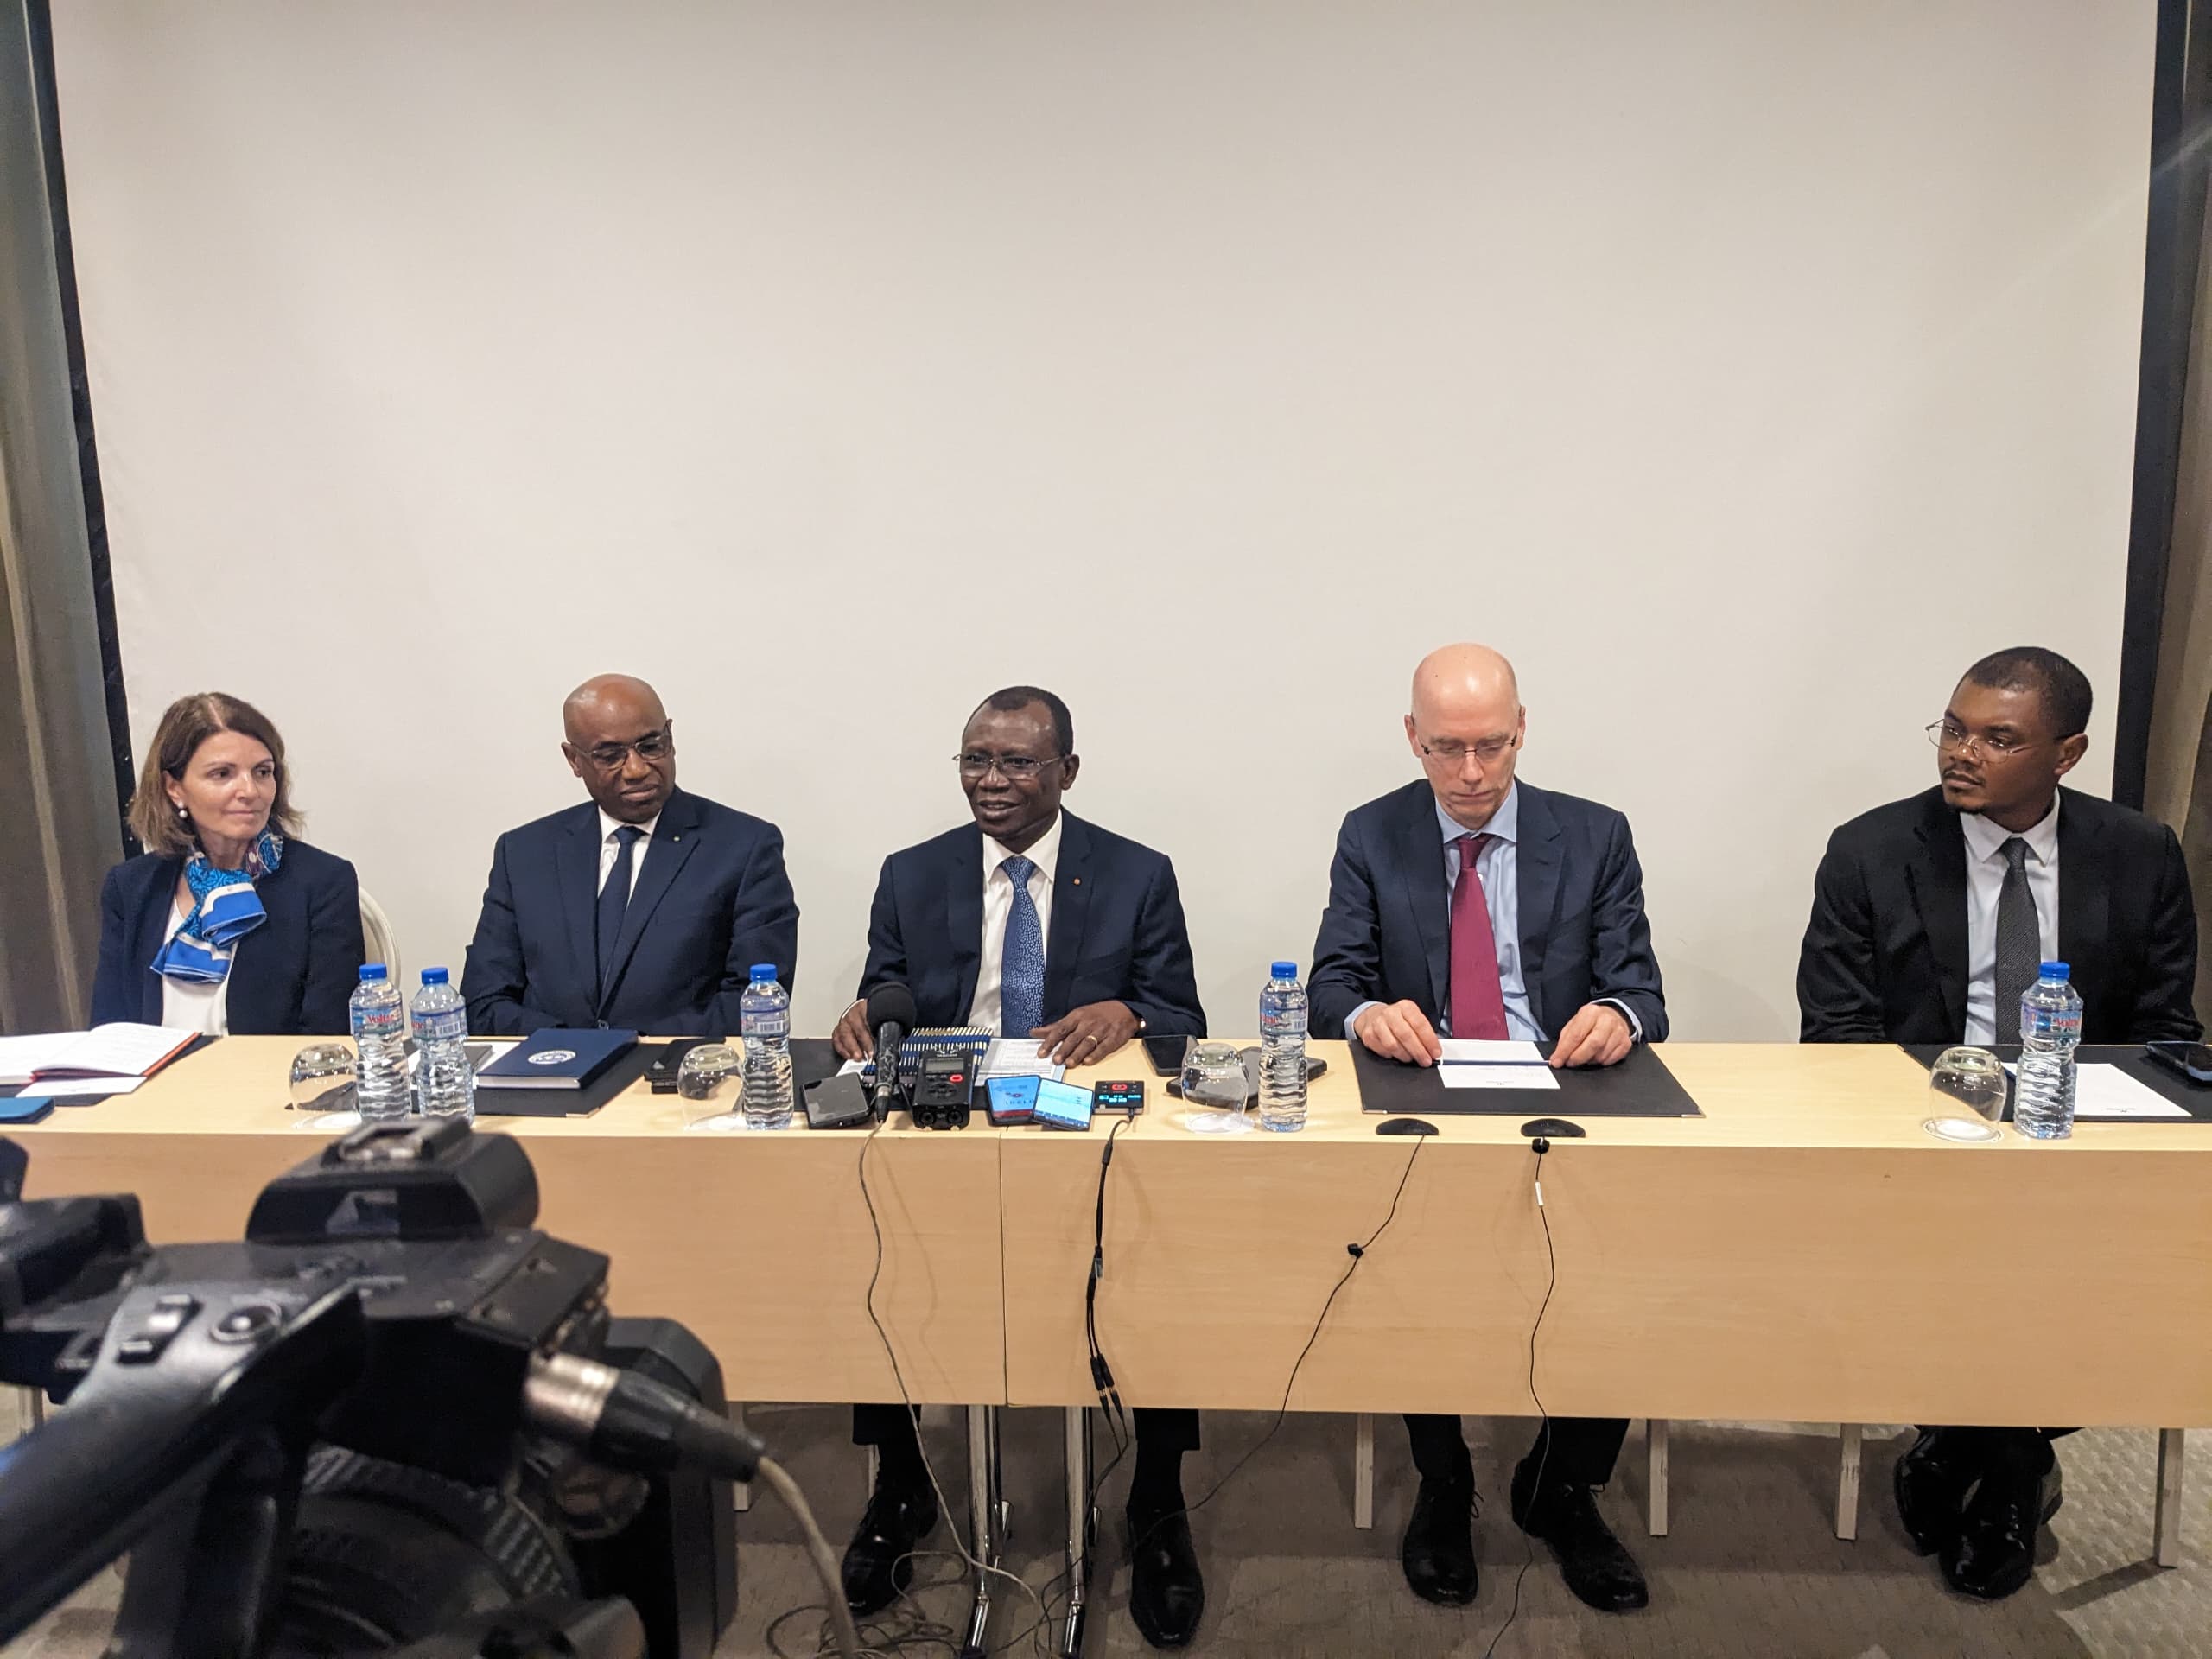  Facilité élargie de crédit : FMI approuve un accord de 42 mois en faveur du Togo 